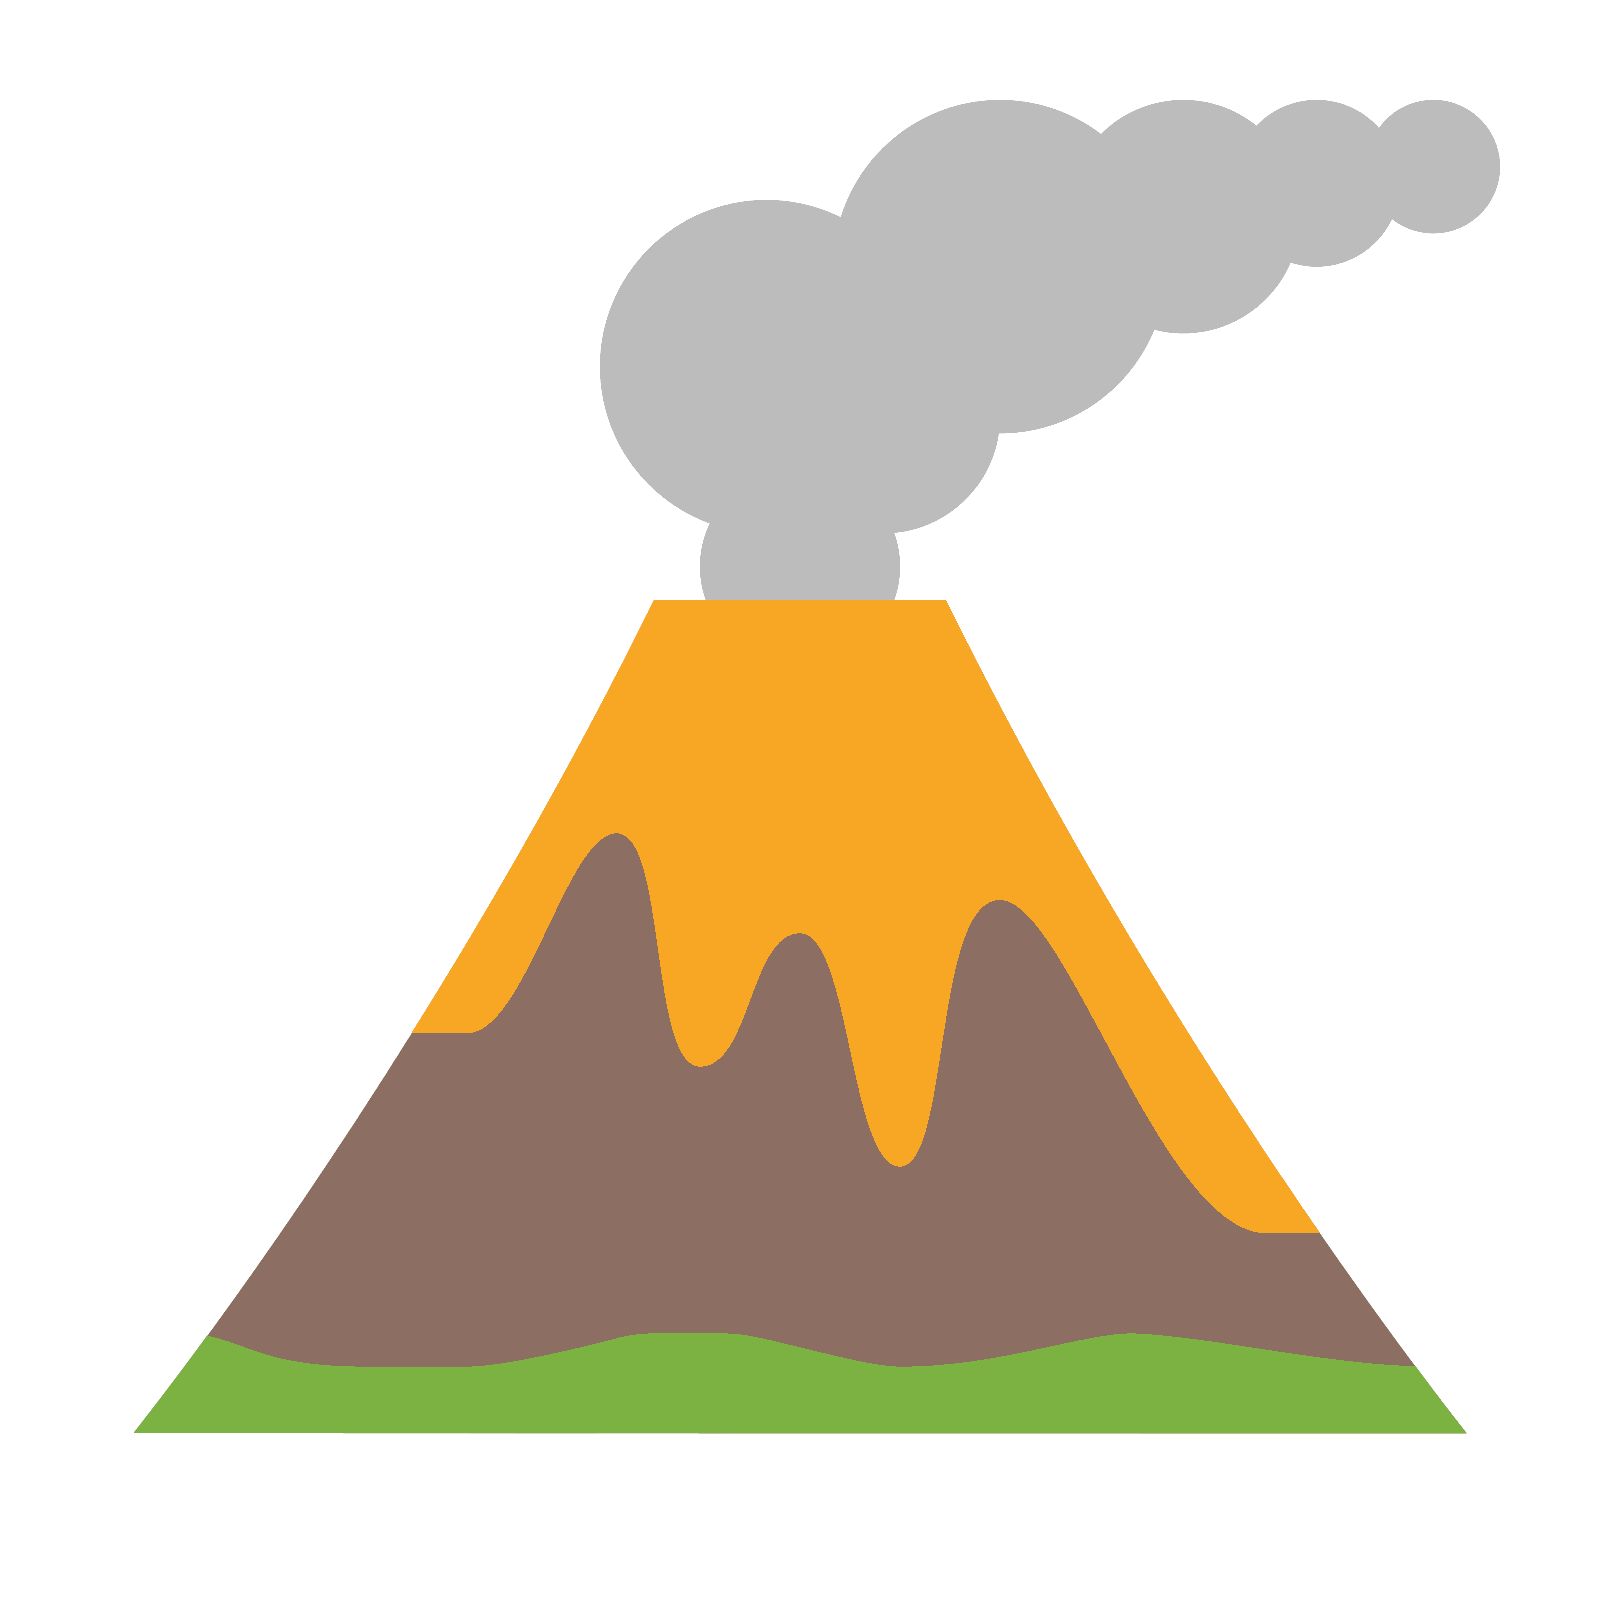 Núi lửa